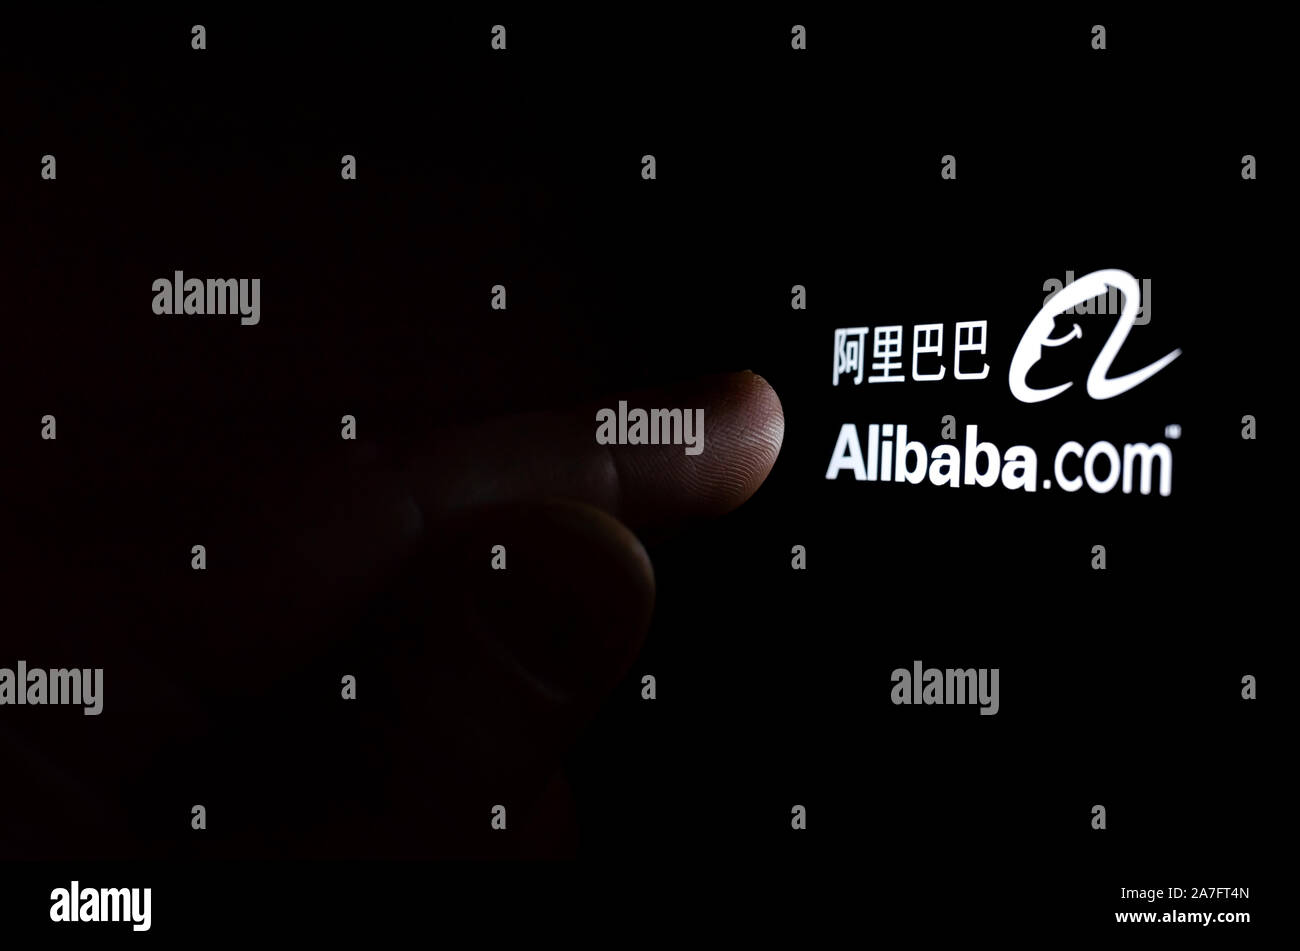 Alibaba Firmenlogo auf einem Bildschirm des Smartphones in einem dunklen Raum und einen Finger zu berühren. Stockfoto